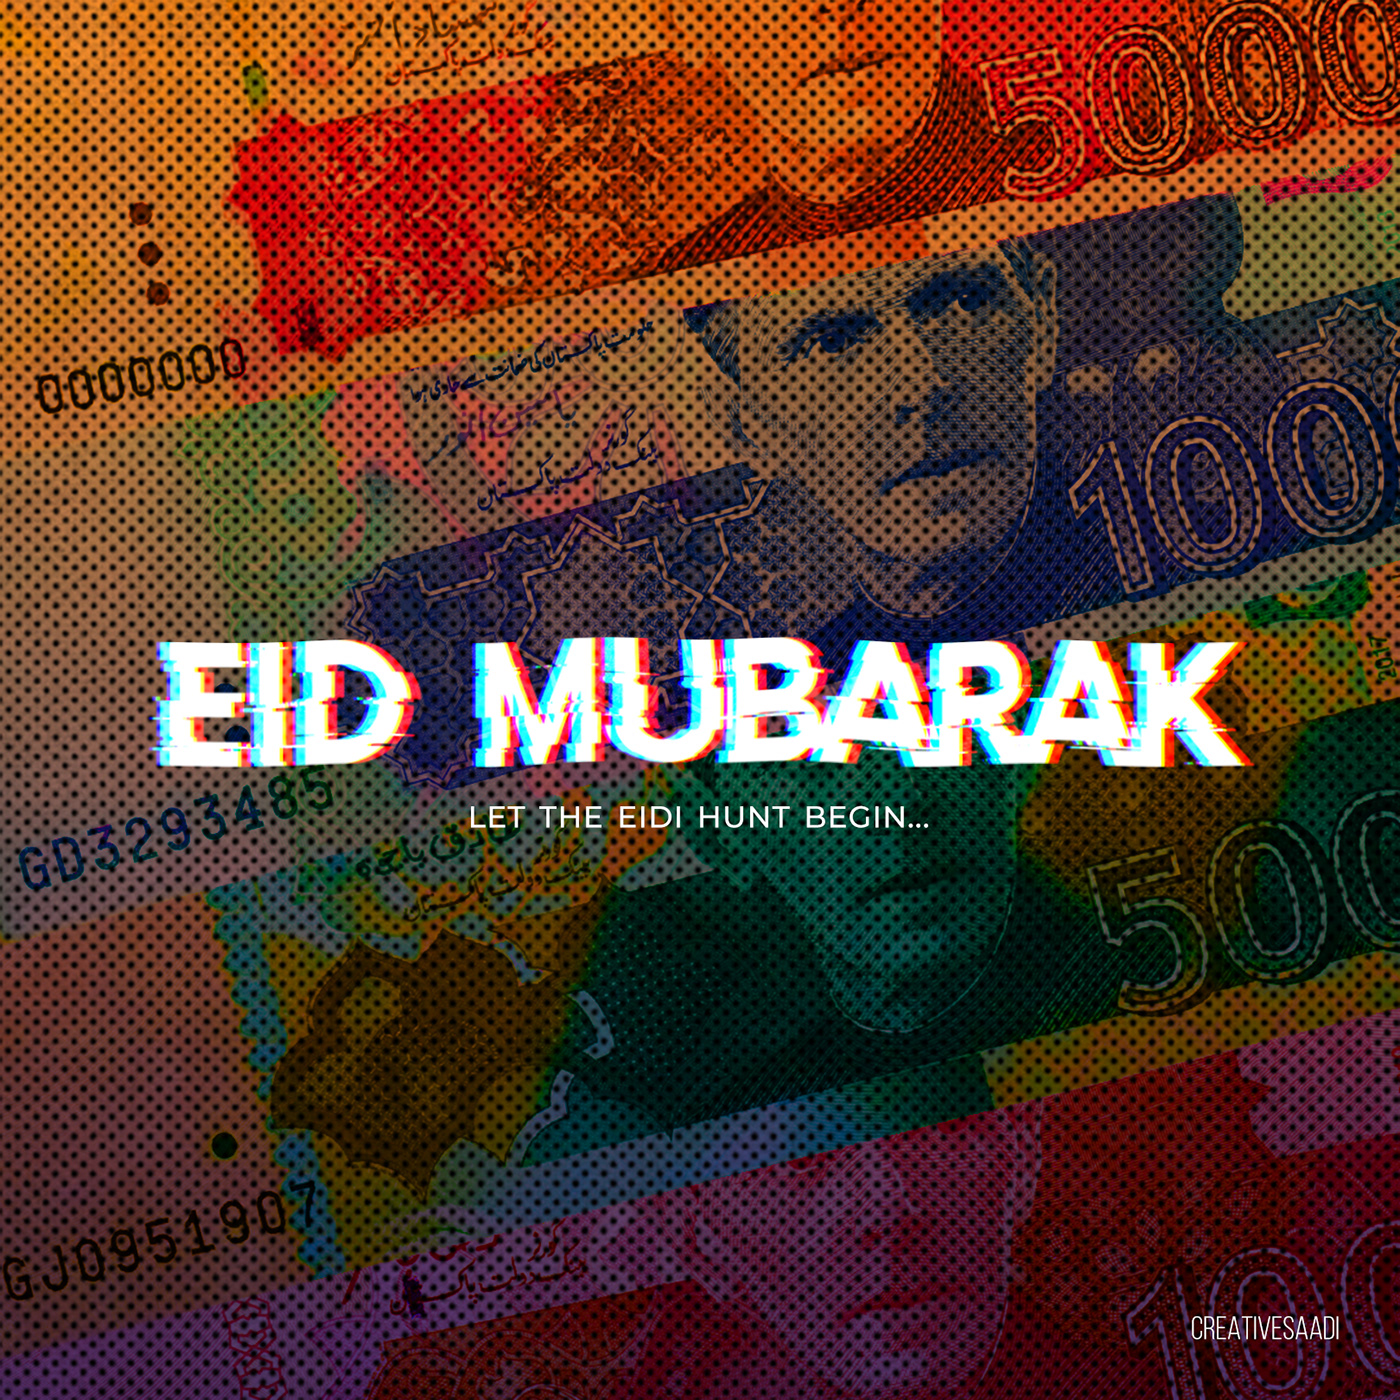 Eid eid Design eid greetings eid mubarak Eid ul Fitr EidMubarak islamic